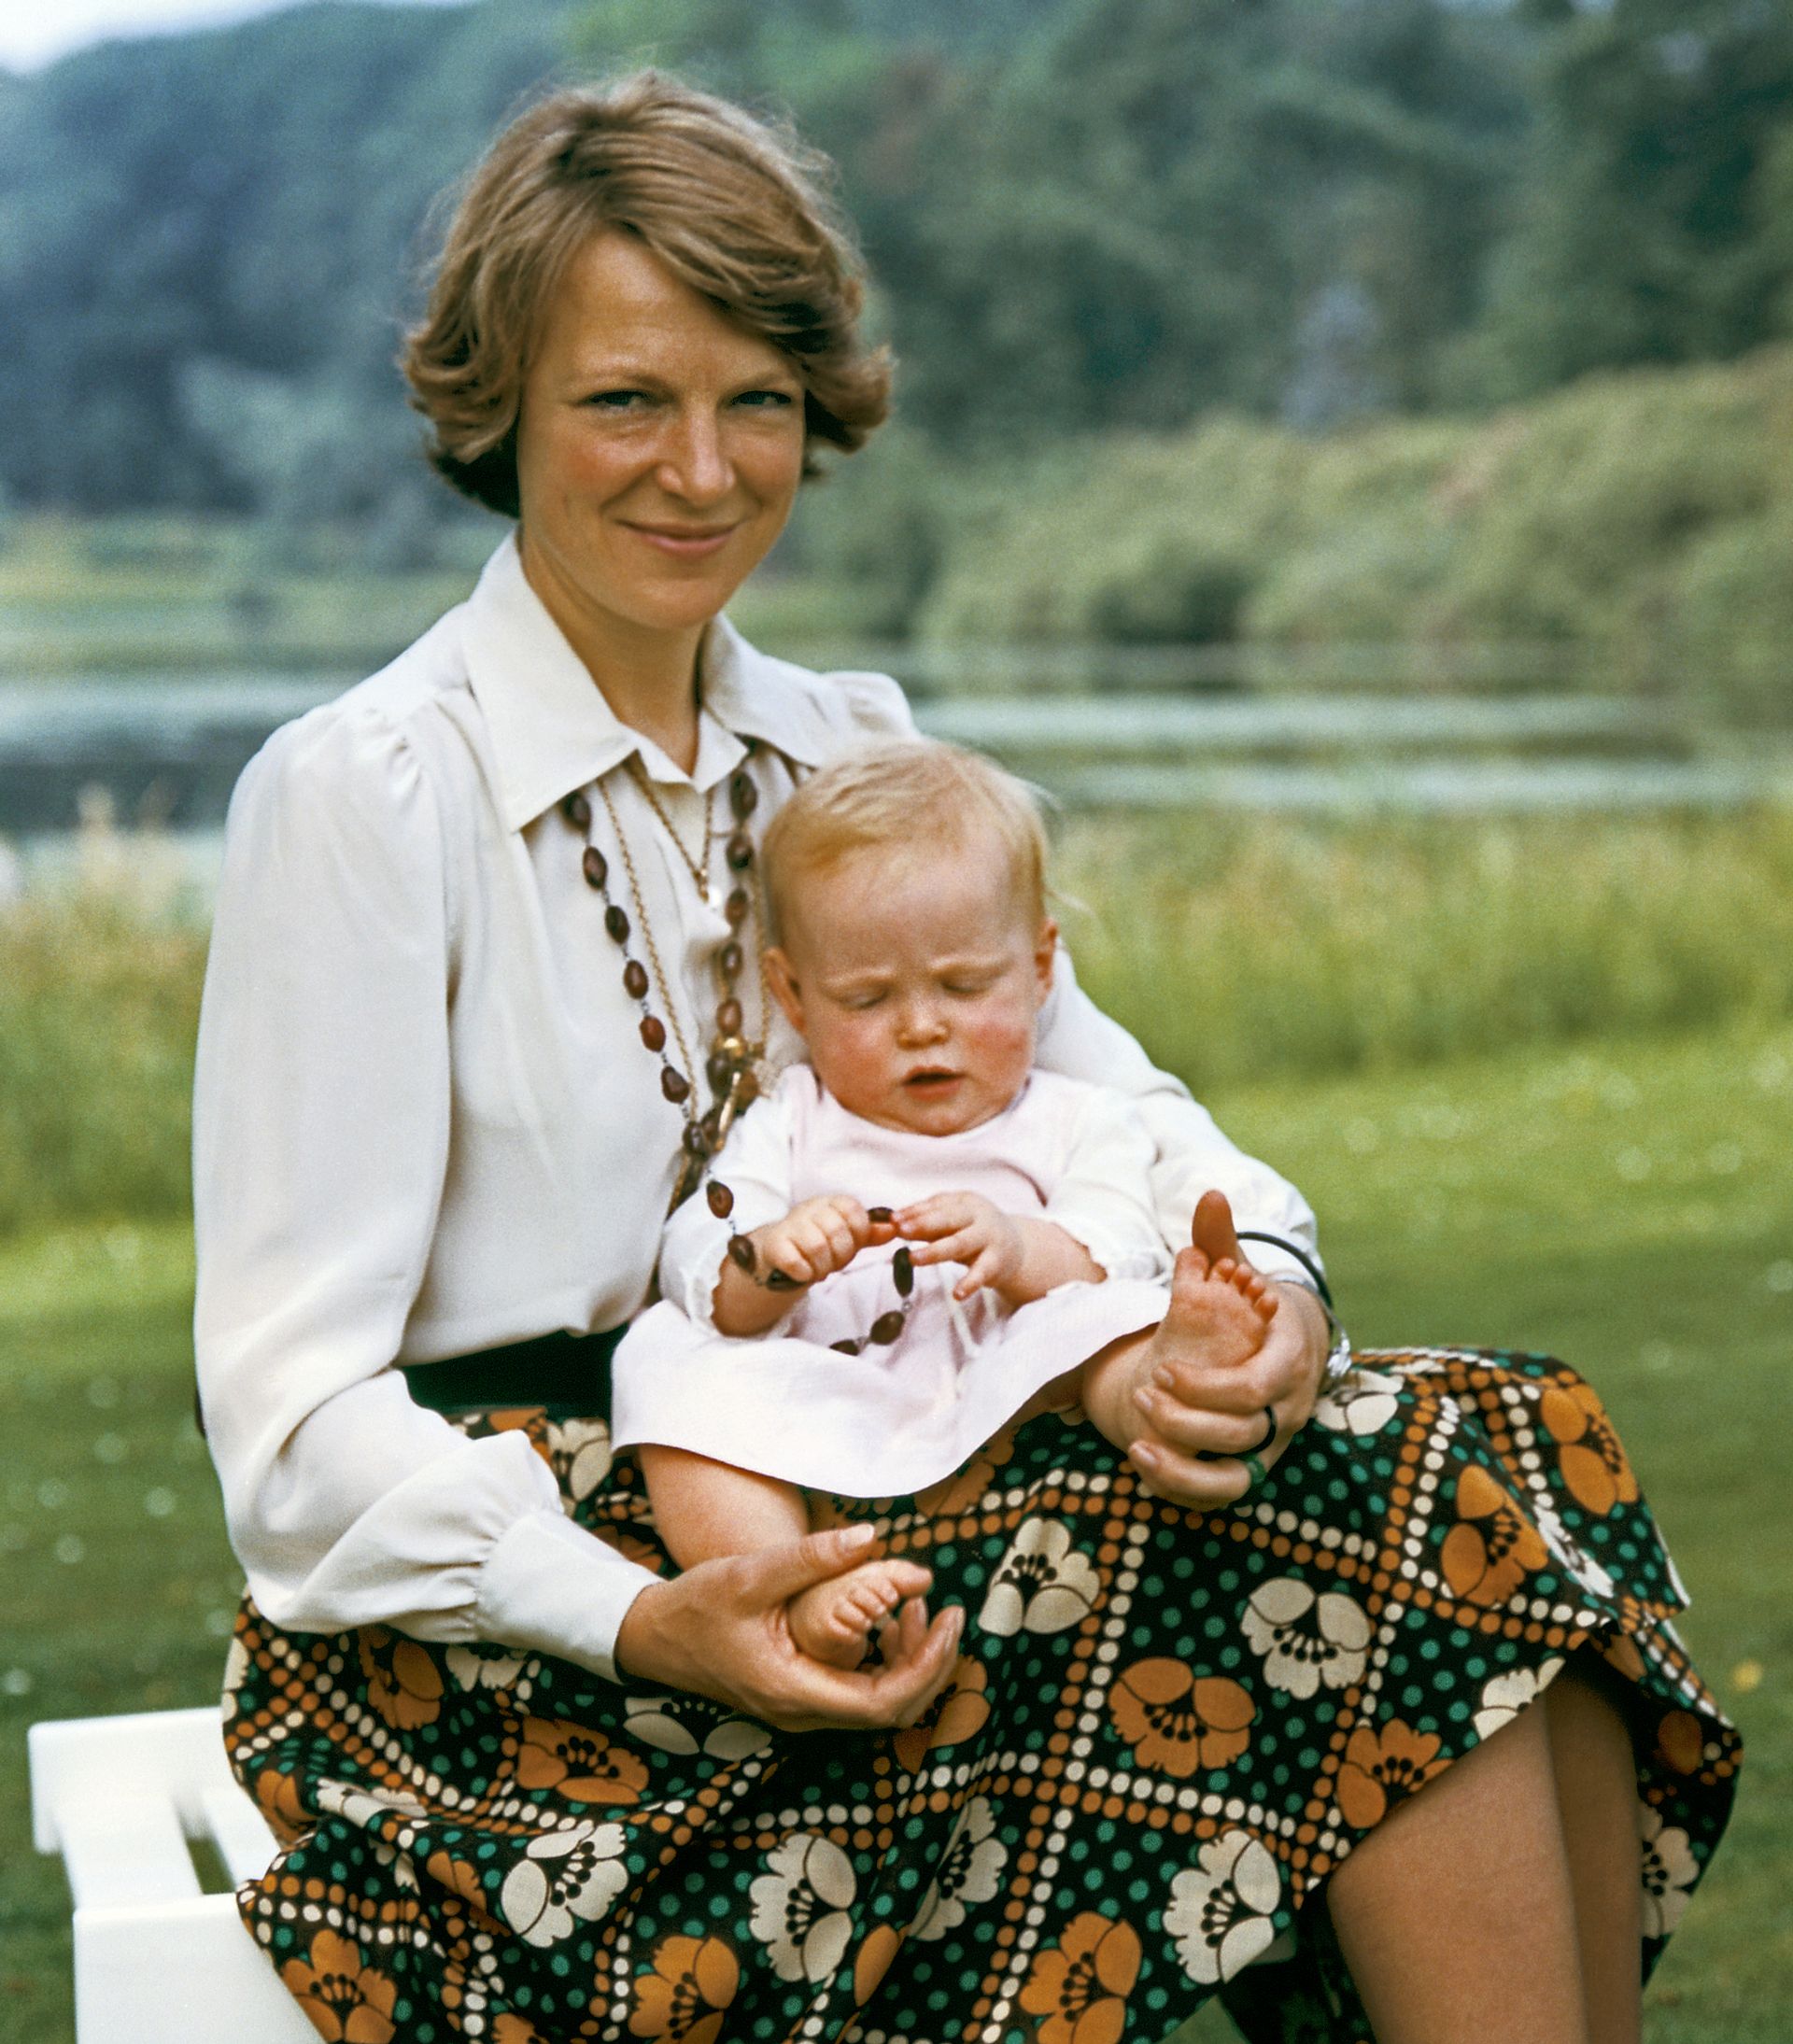 Prinses Carolina op schoot bij haar moeder in de tuin van Paleis Soestdijk, zomer 1975.